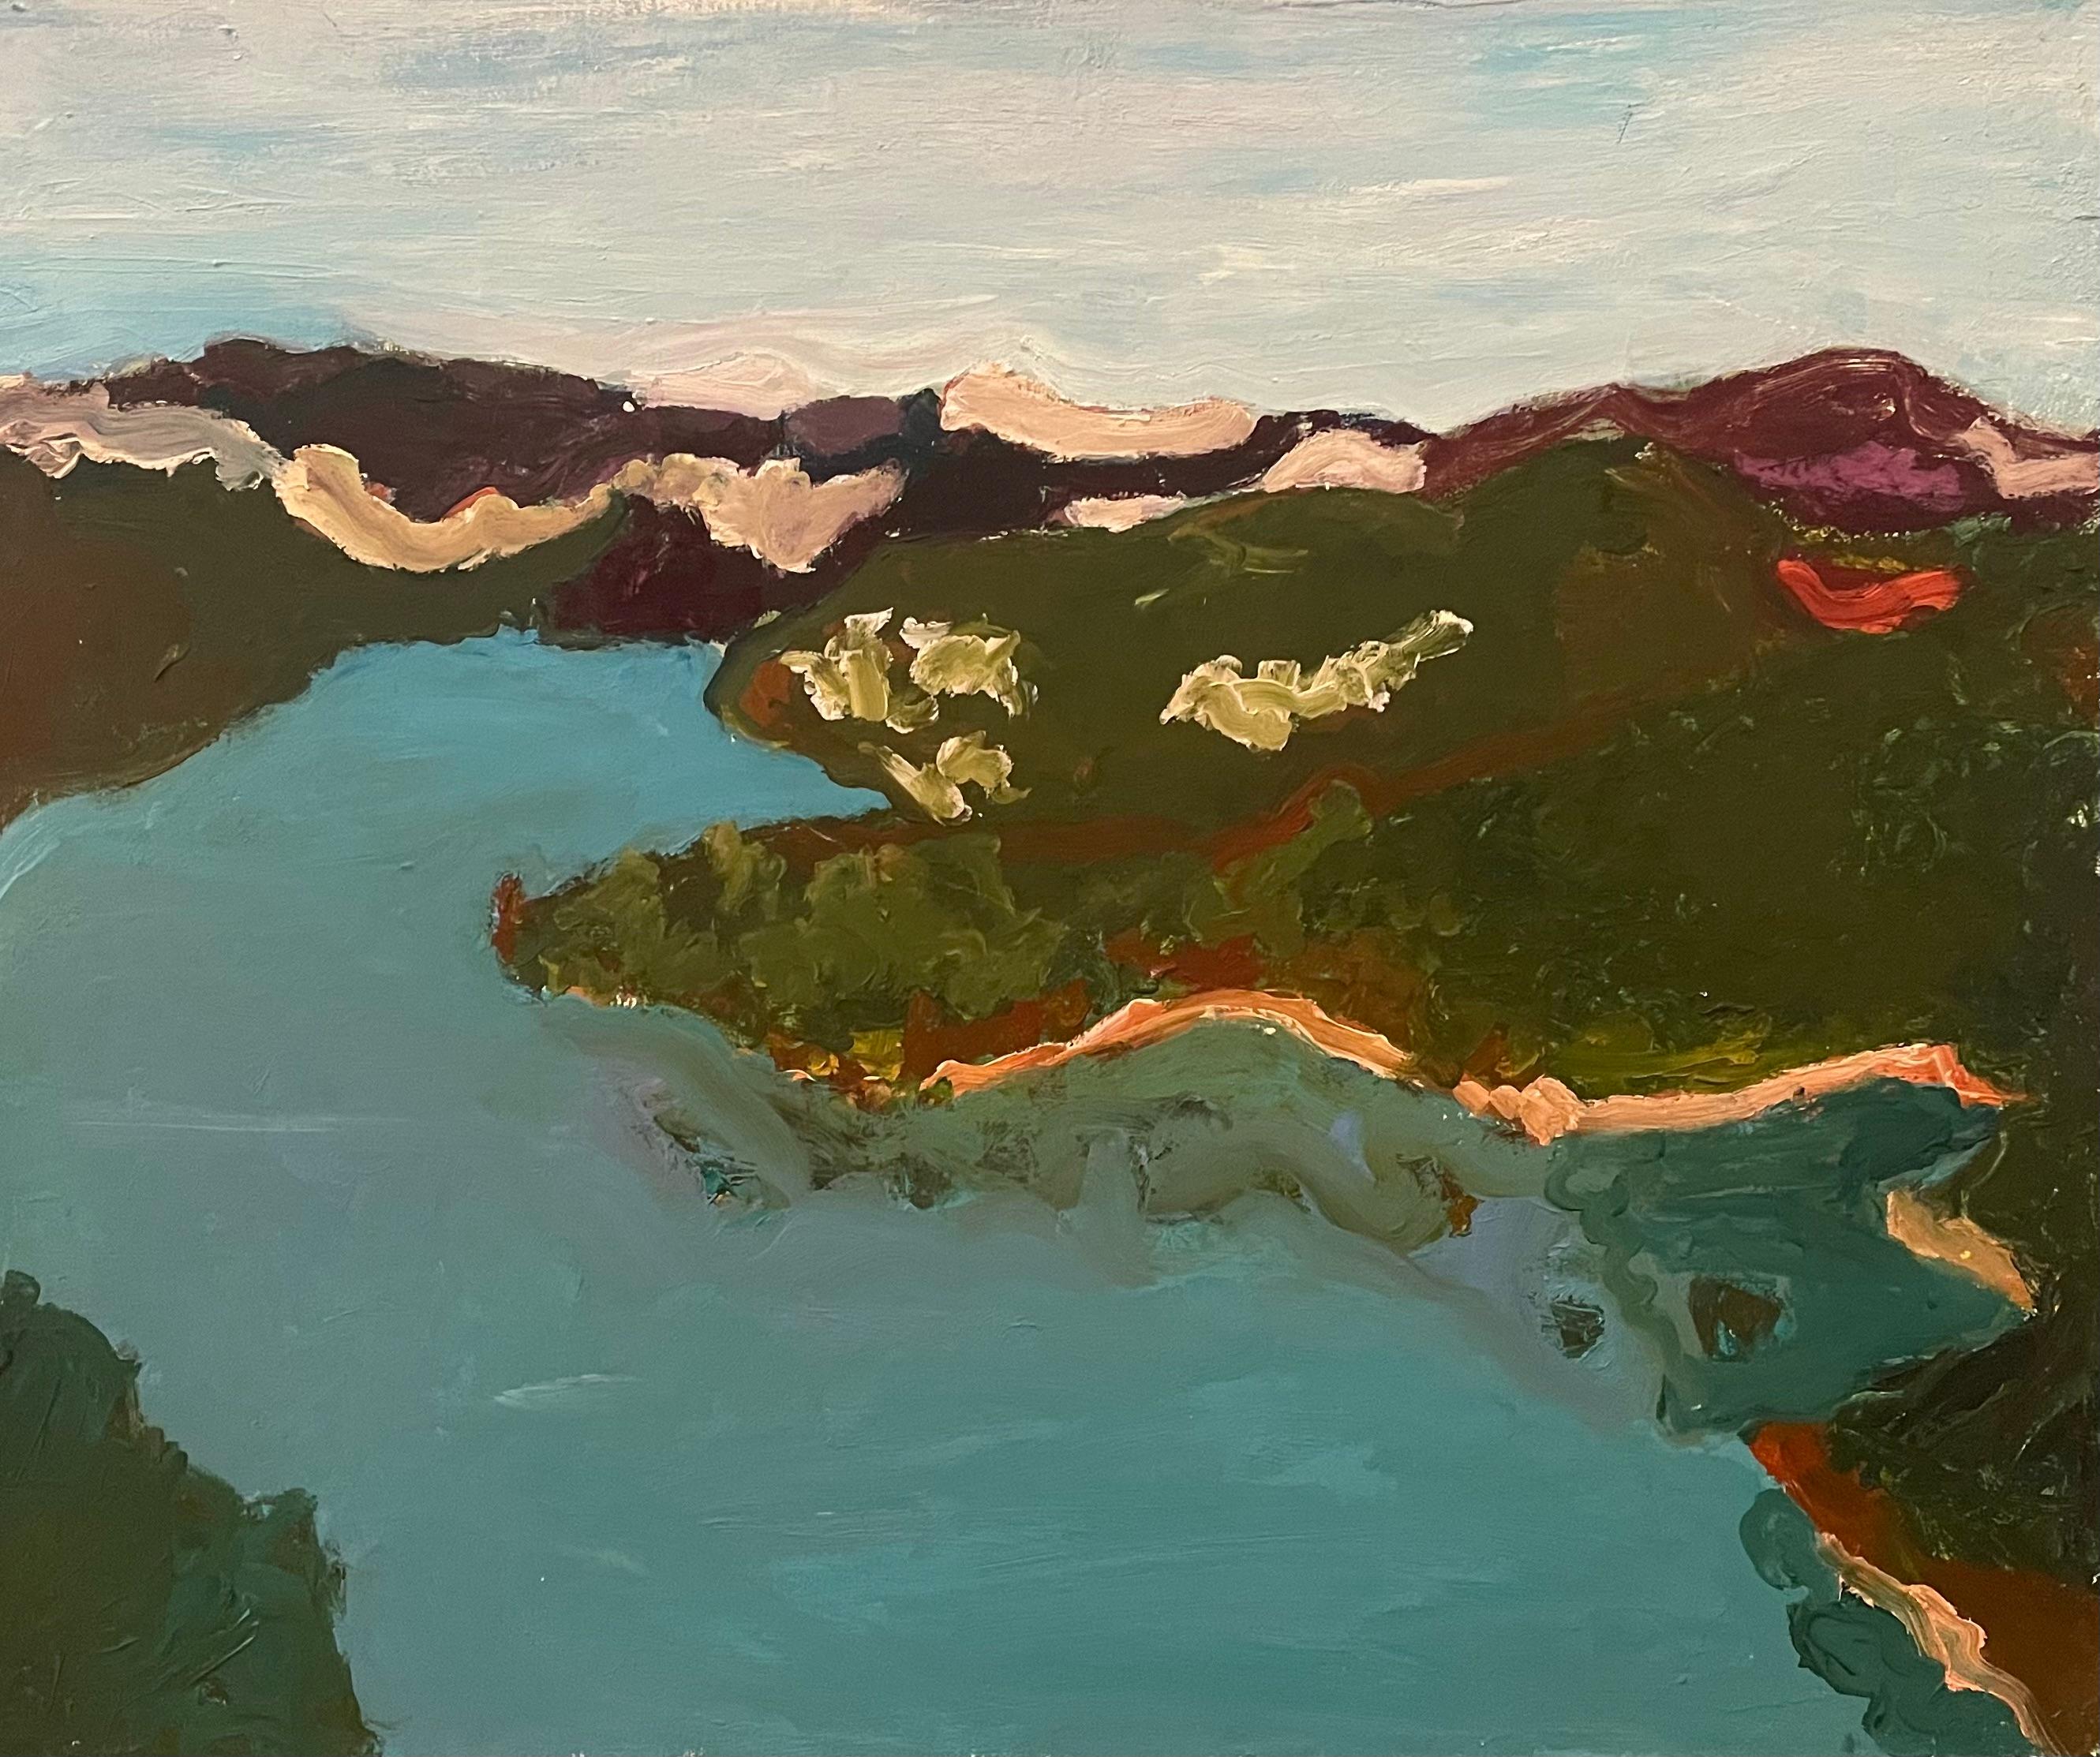 L'œuvre "Hudson River" de Betsy Podlach est un paysage expressif peint à l'huile sur toile, qui capture la beauté sereine et intemporelle de la célèbre rivière. D'une taille de 25,5 x 30 pouces, cette œuvre utilise une palette sobre de bleus froids,